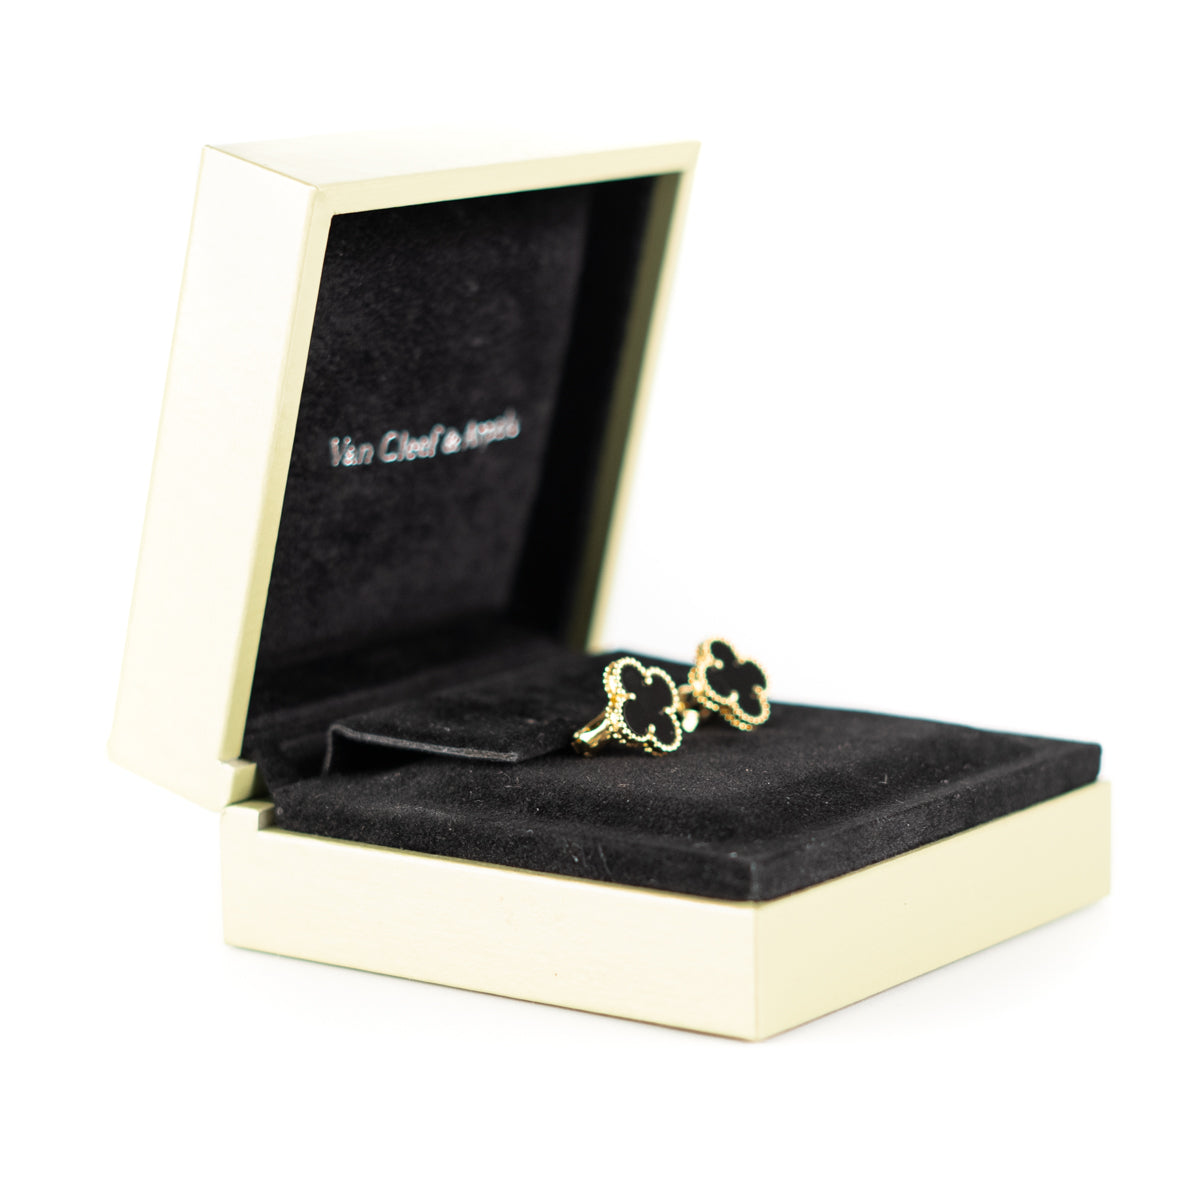 Van Cleef & Arpels Vintage Onyx Gold Earrings - THE PURSE AFFAIR